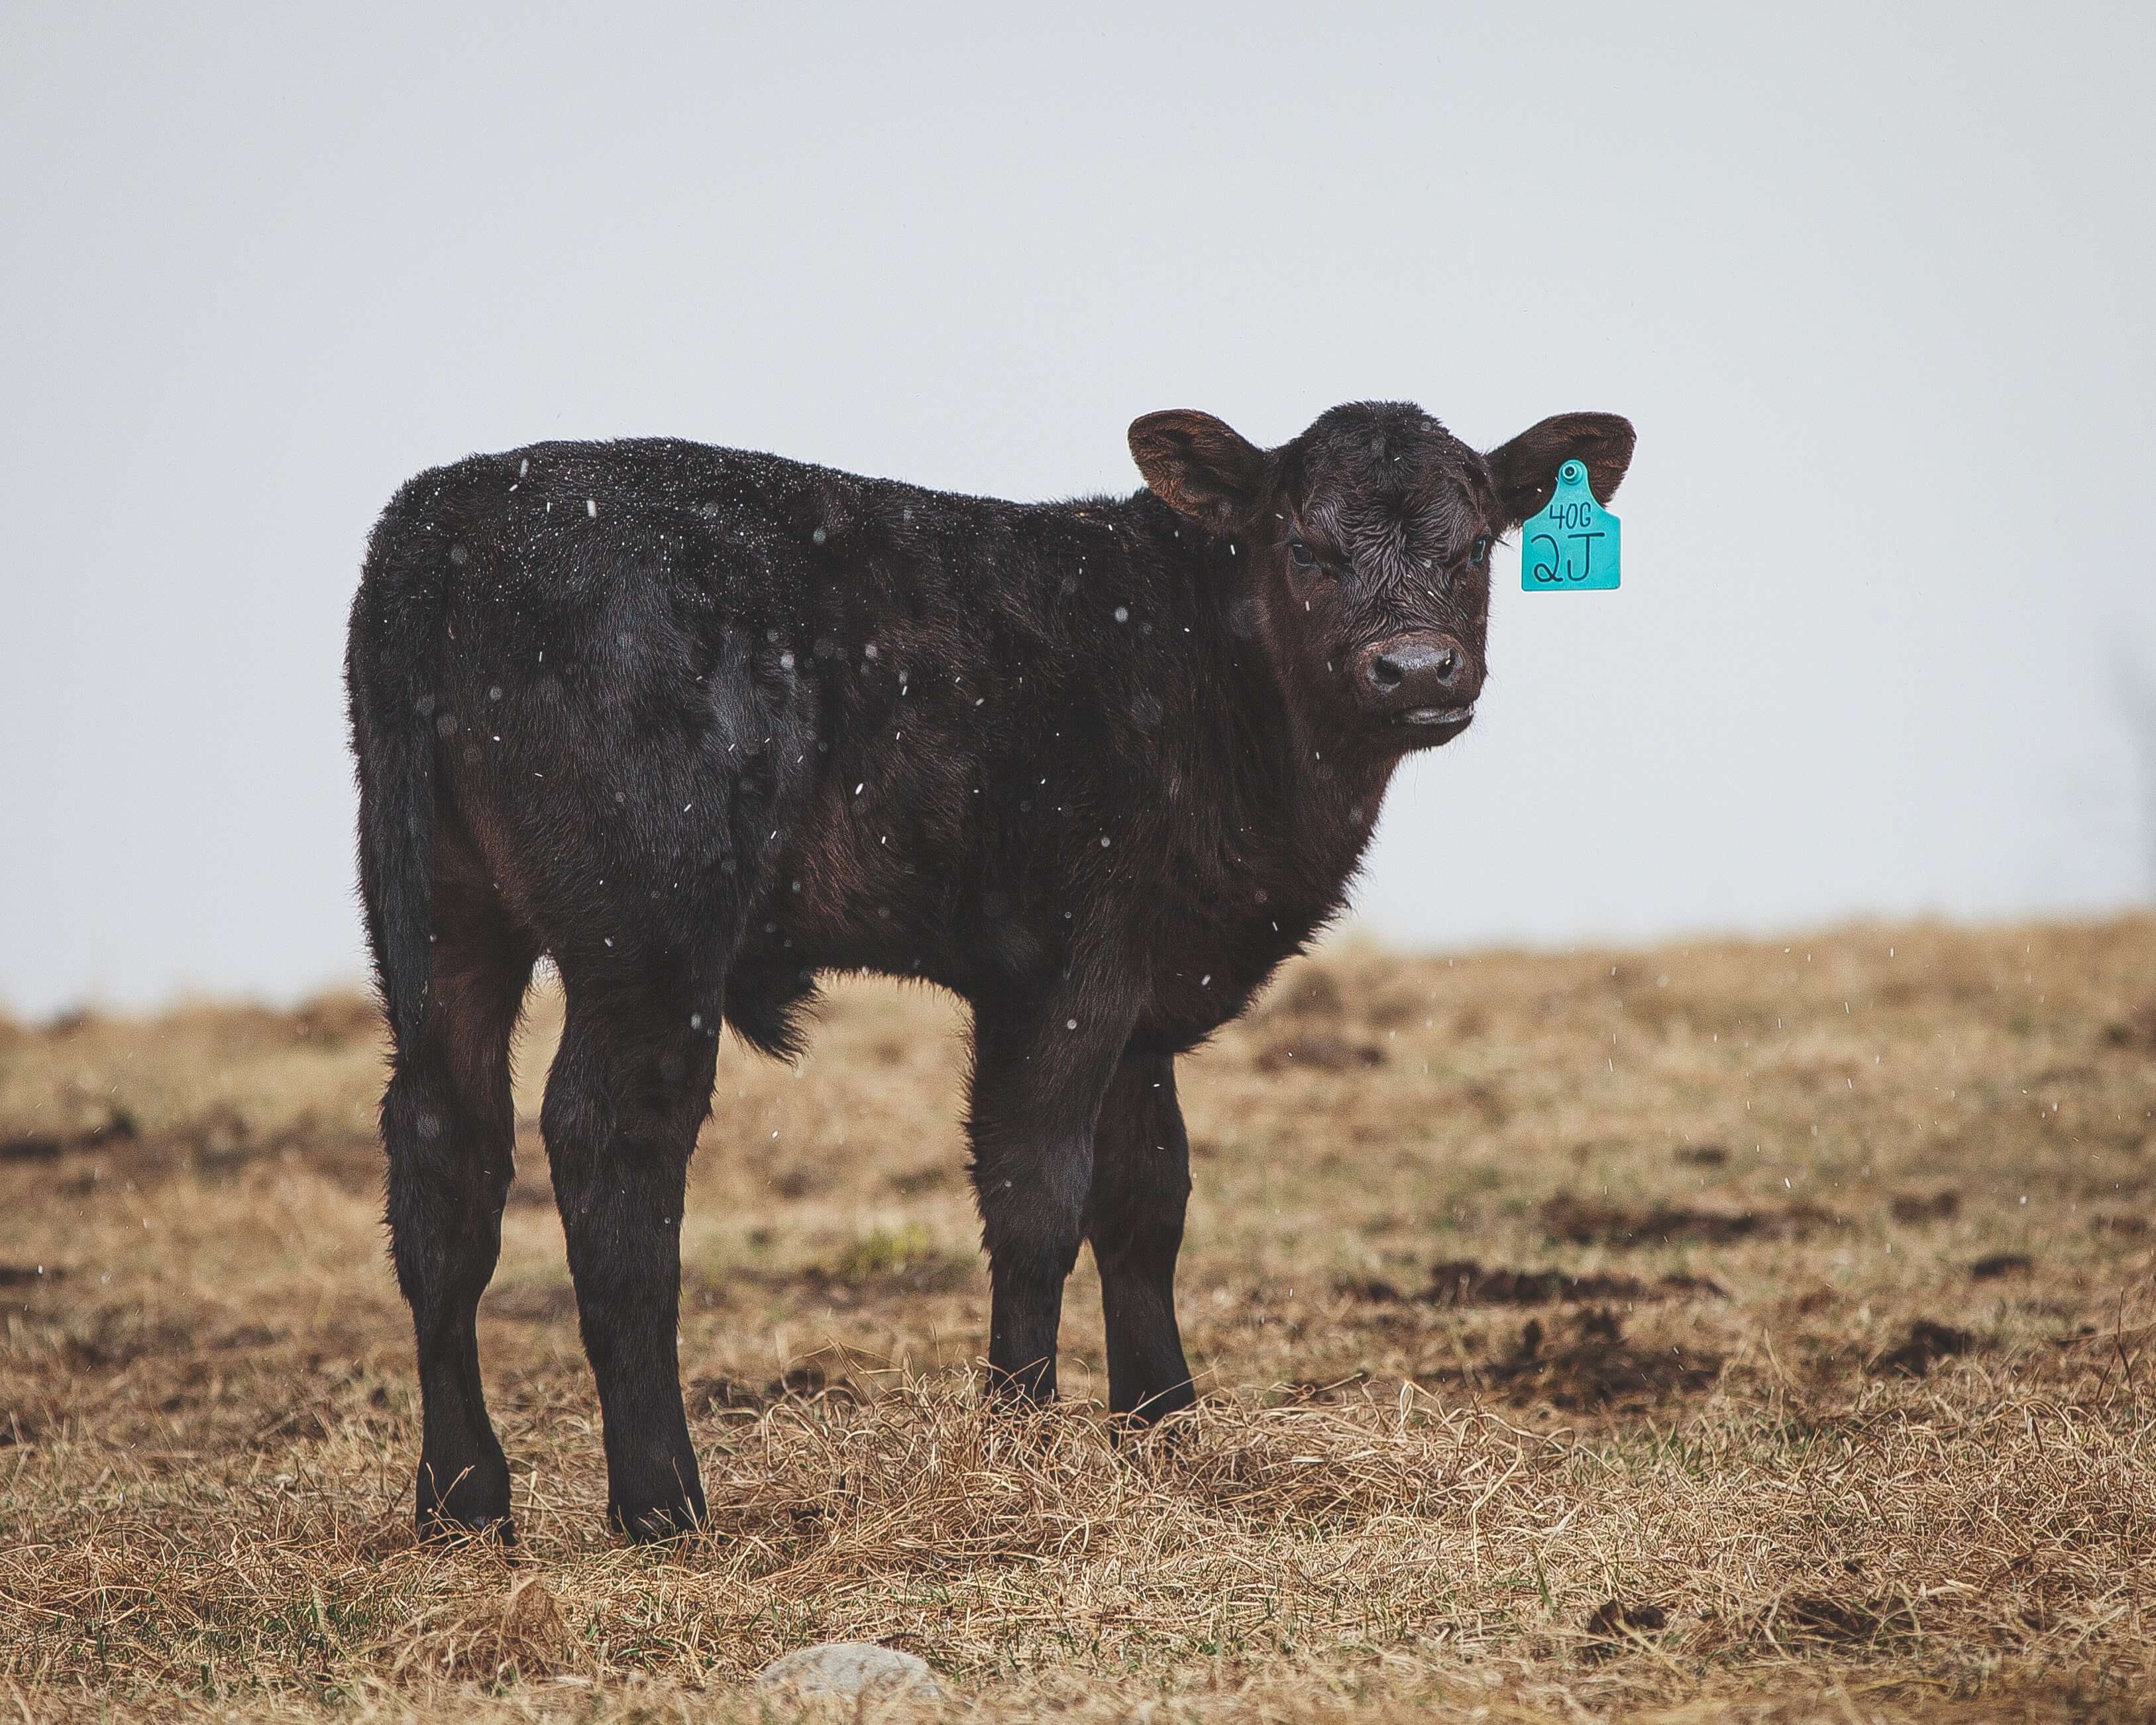 Albia, Des Moines, Iowa Farm Livestock Insurance